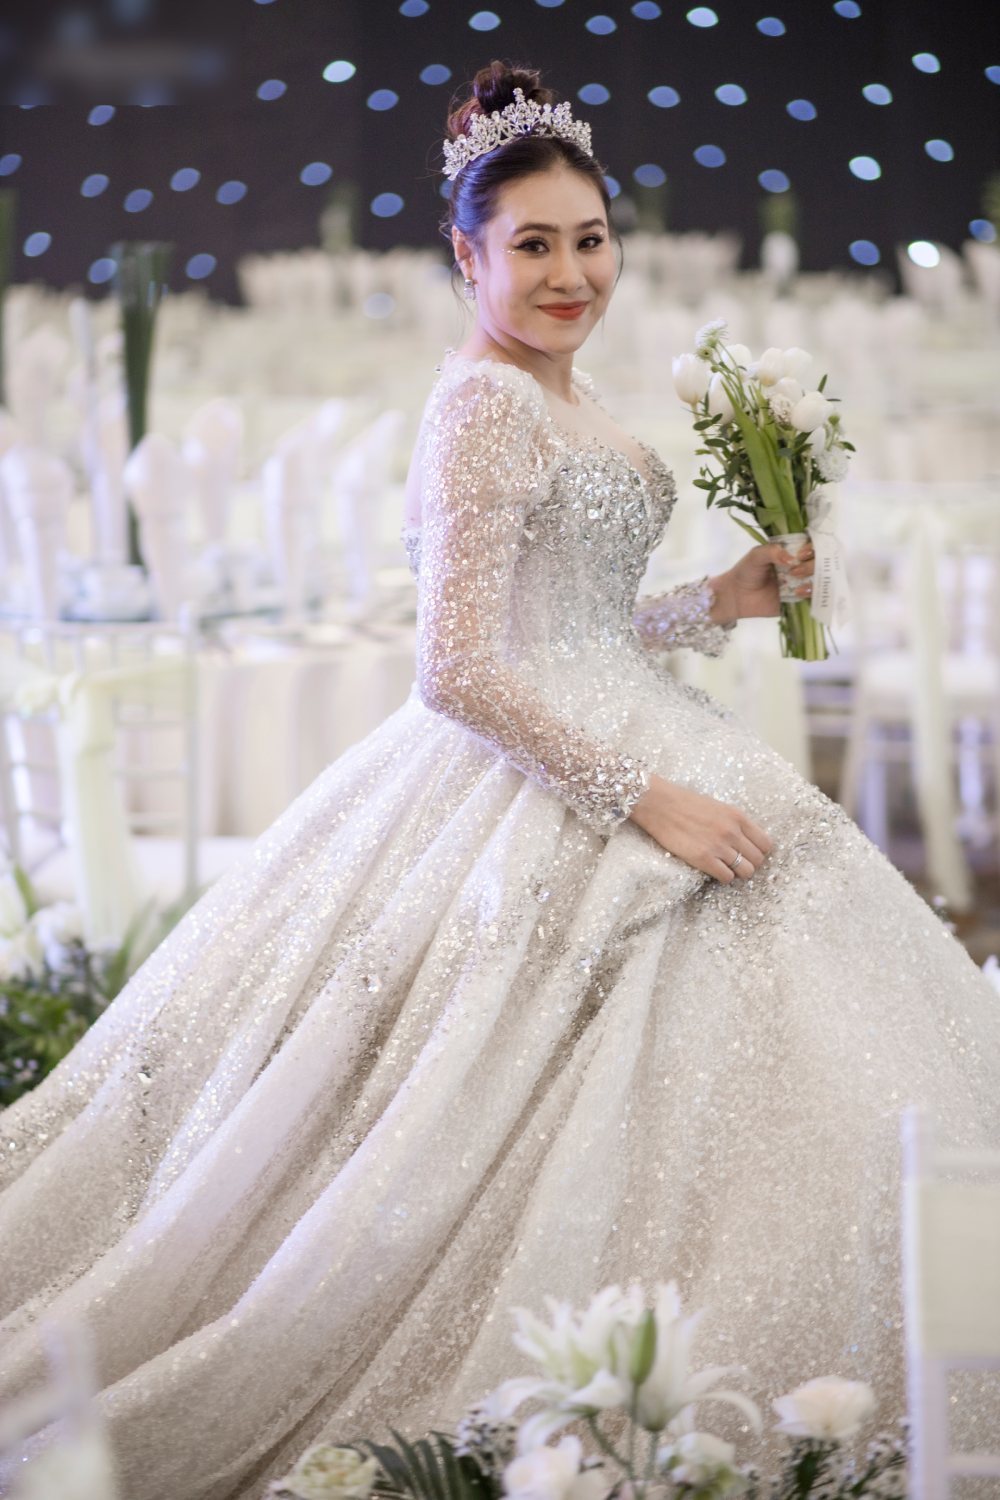  
Mẫu váy cưới gần nửa tỷ đồng giúp nữ diễn viên hóa thành nàng công chúa lộng lẫy trong ngày trọng đại. (Ảnh: FB Linh Nga Bridal)